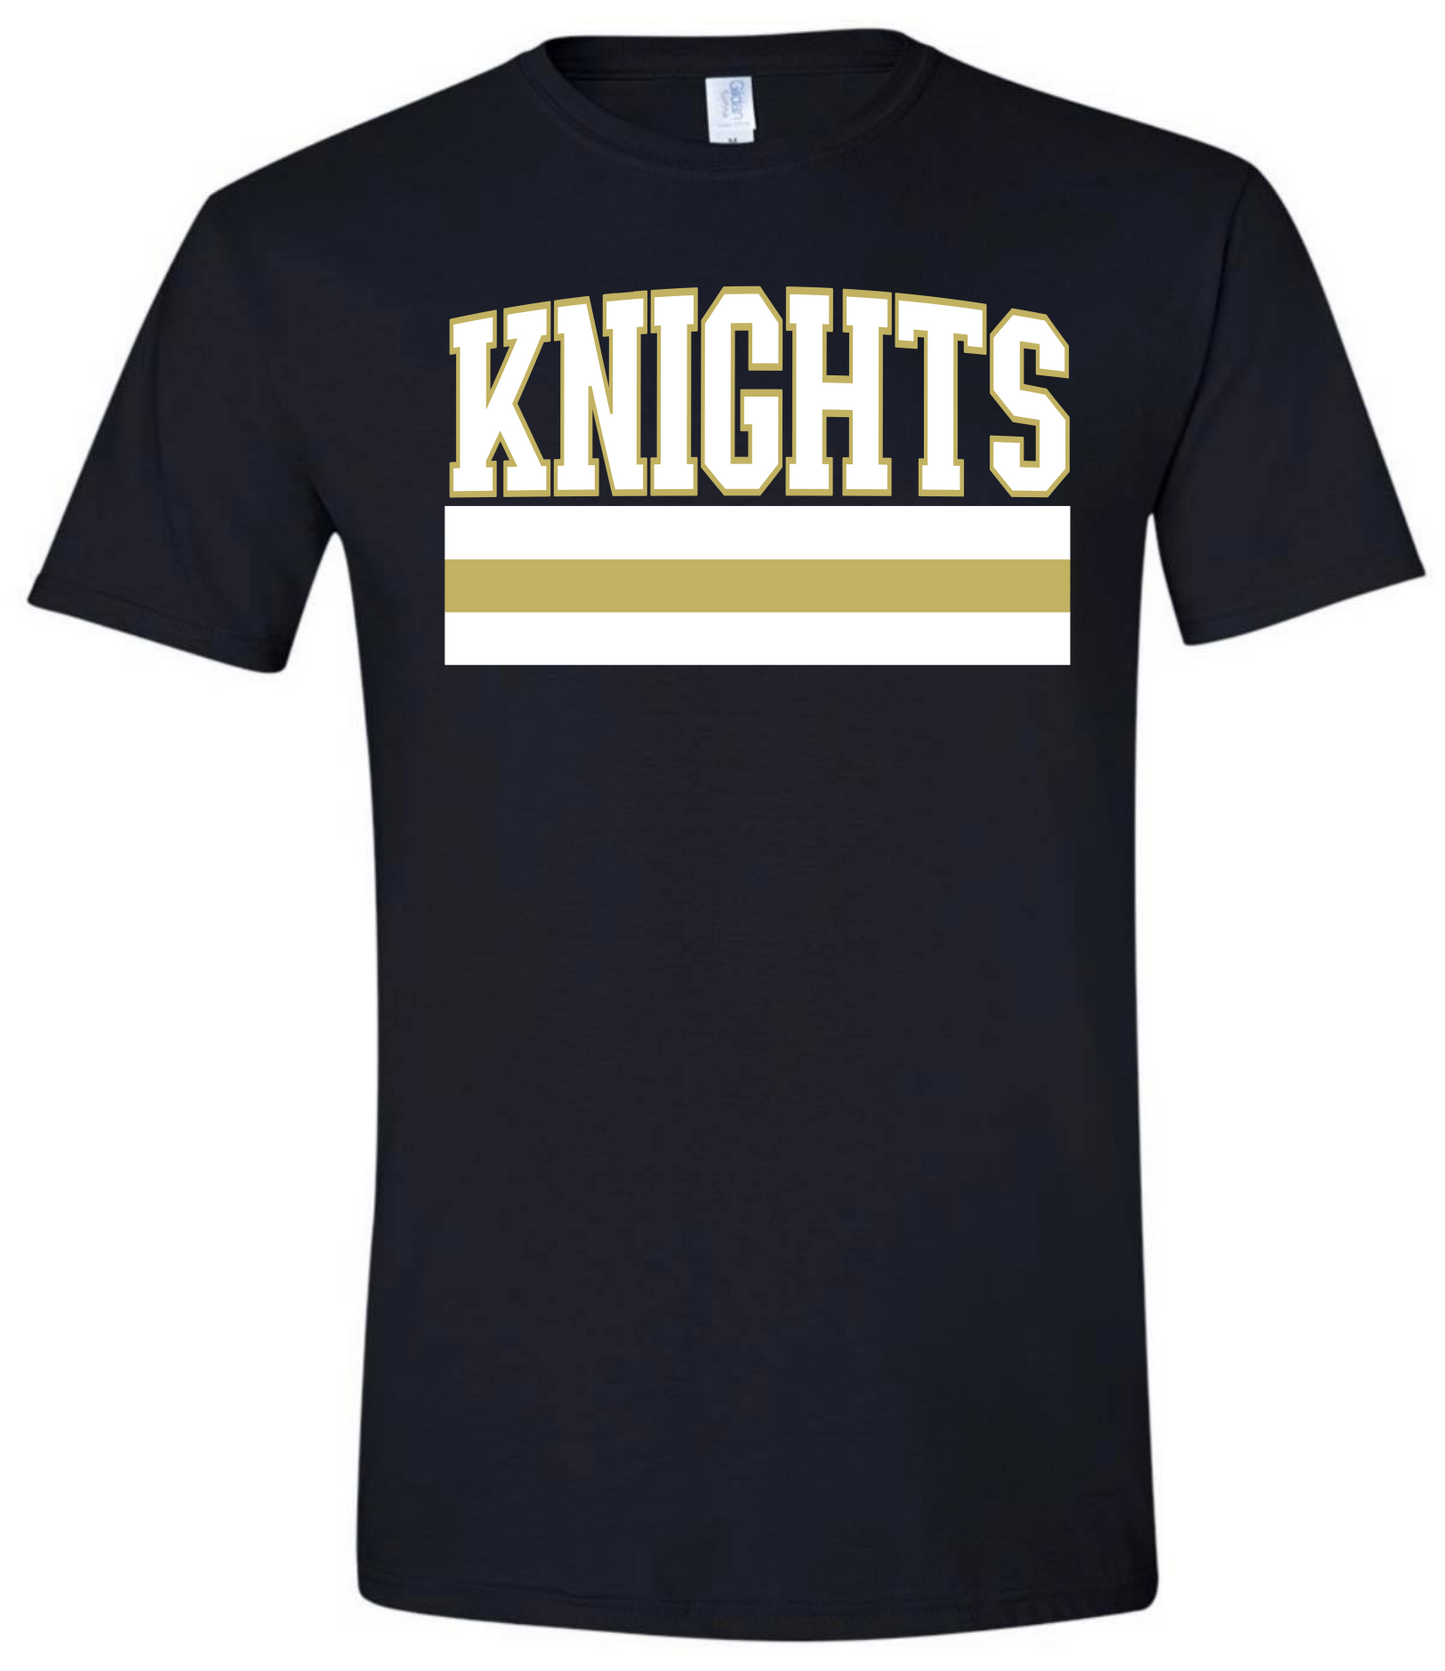 Knights Varsity Lines Tshirt